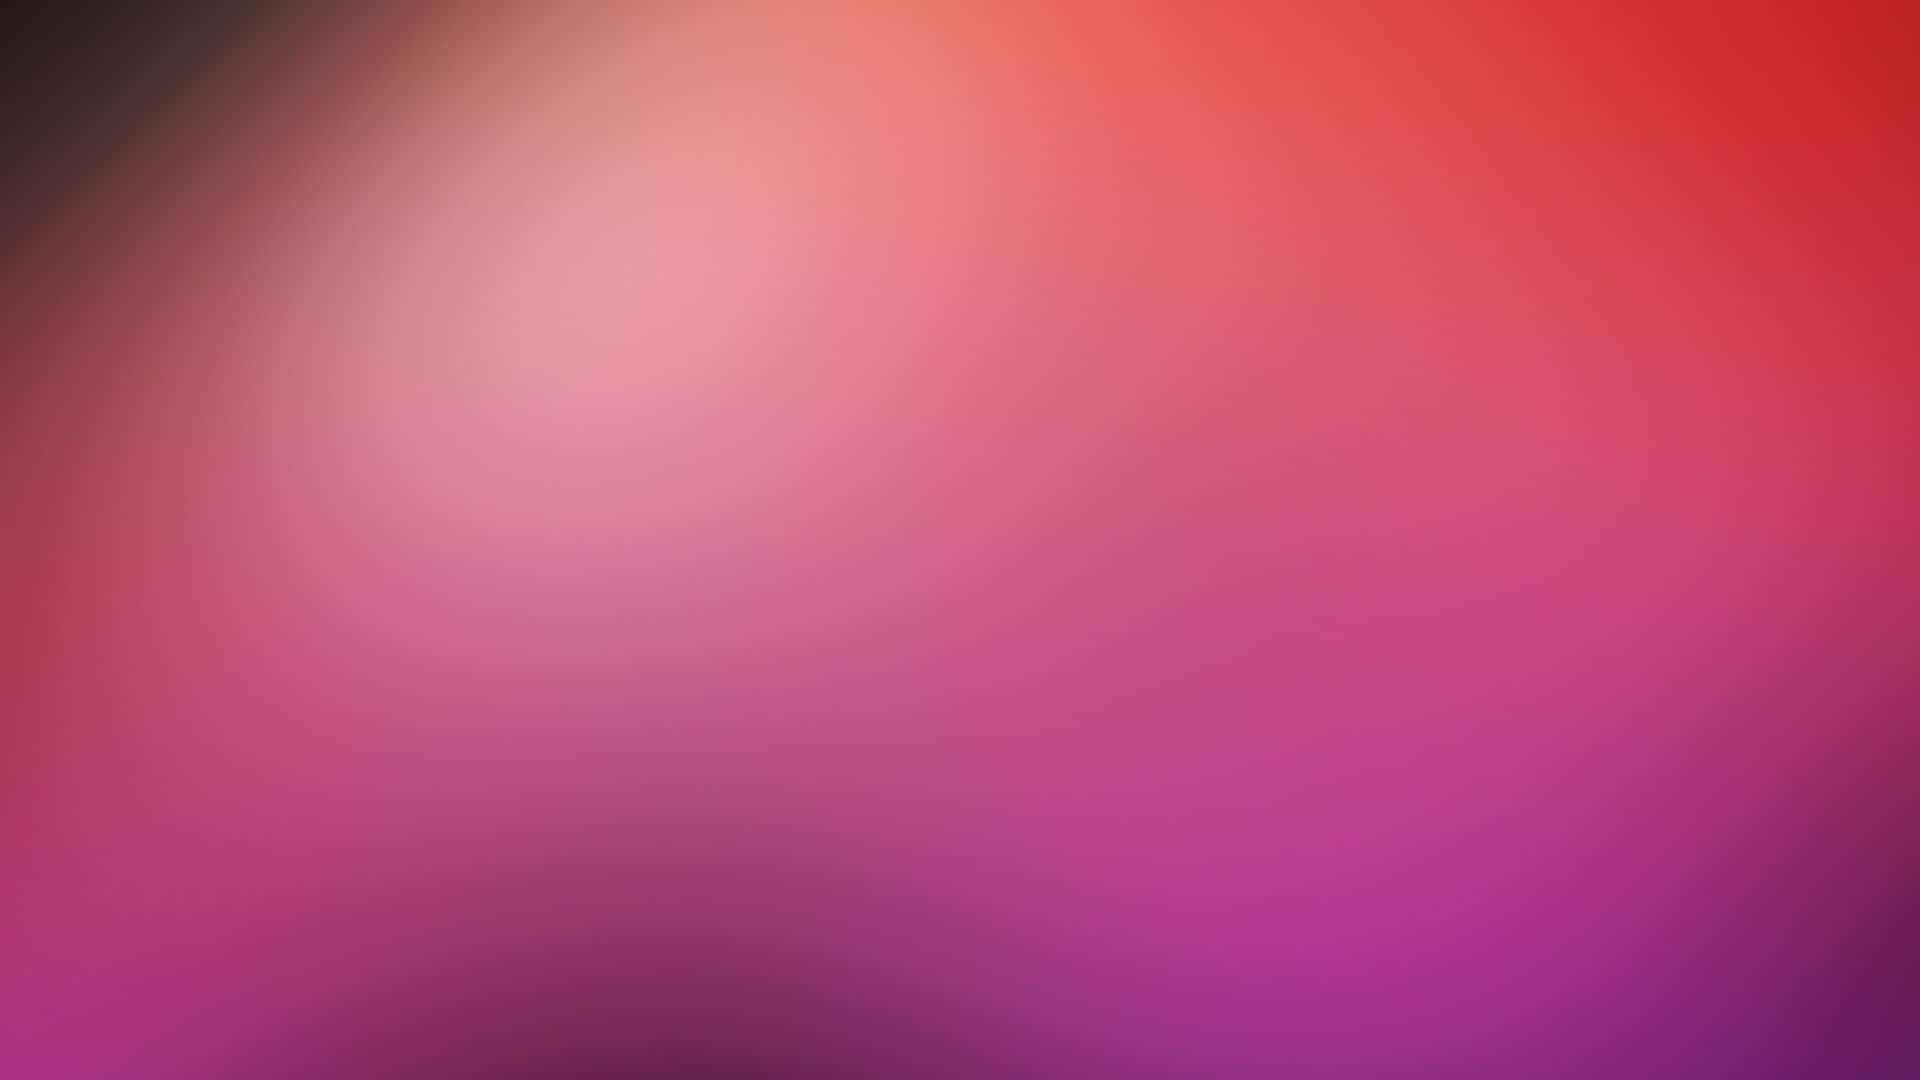 Imagencon Superposición De Degradado Púrpura Rojo